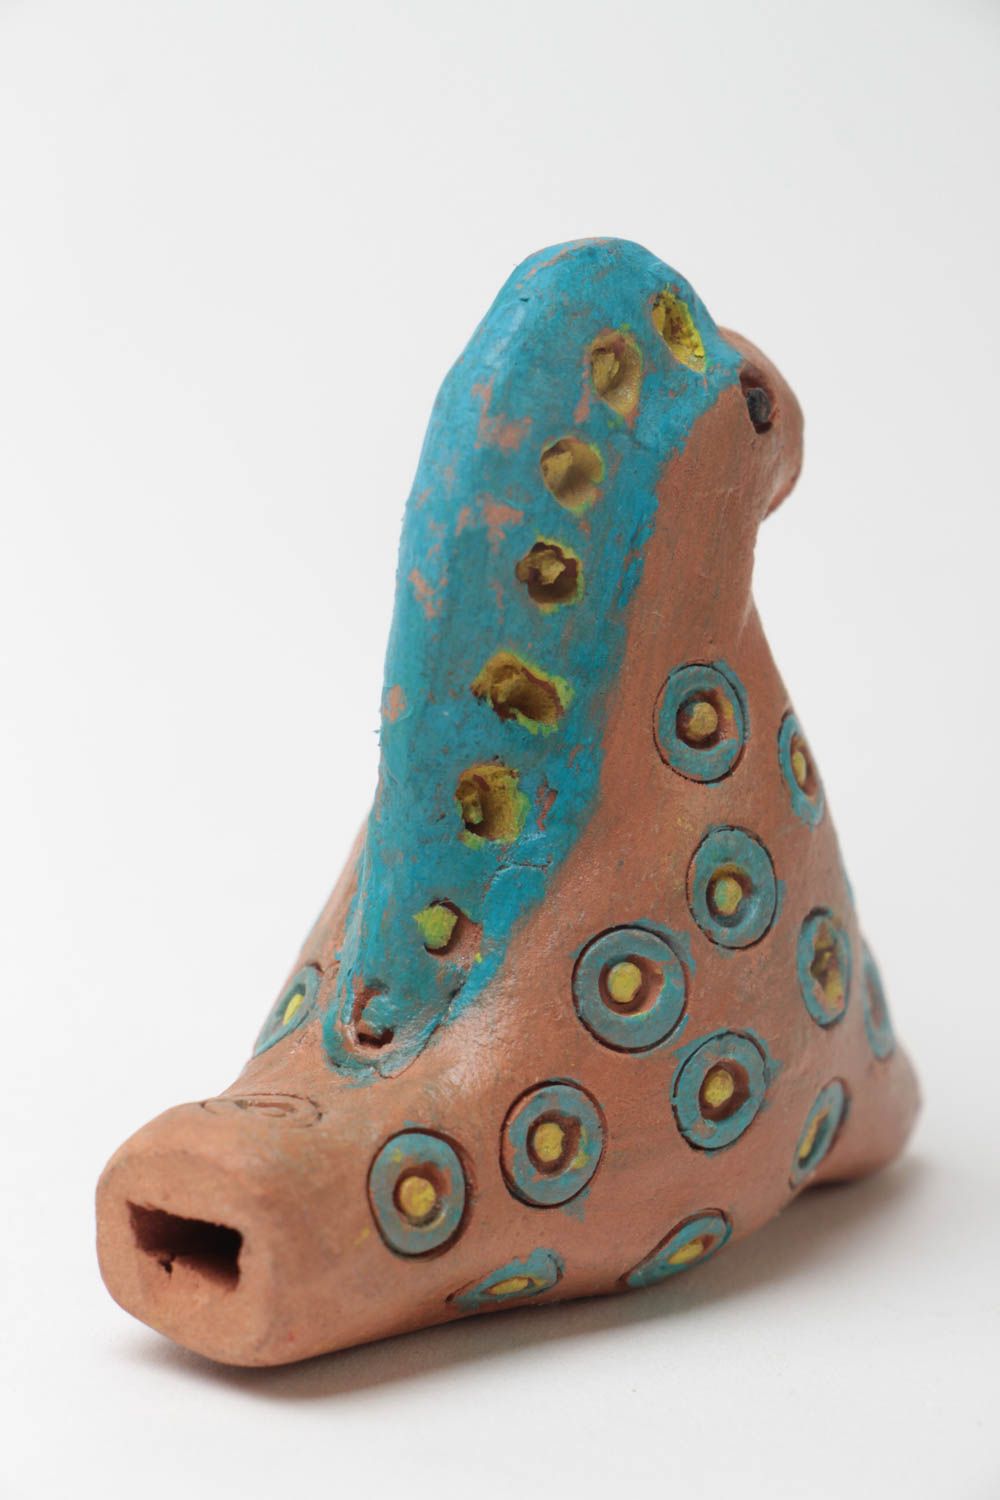 Silbato de arcilla artesanal con forma de caballito pintado original juguete foto 3